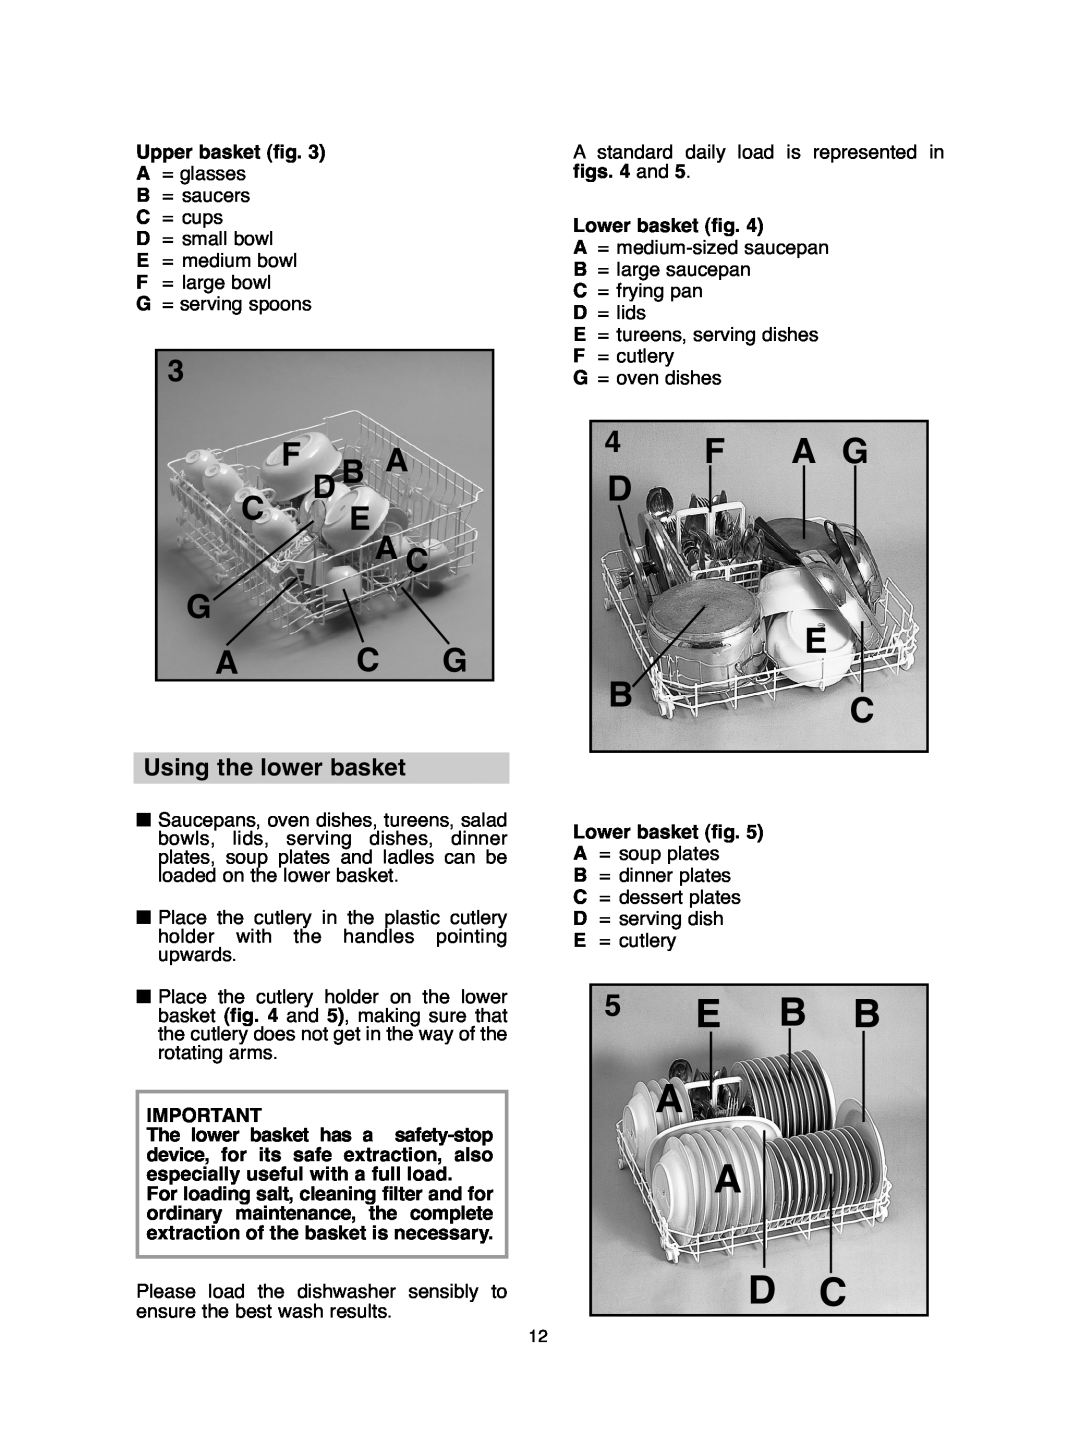 Hoover DDY 062 manual E B B A, A D C, F A G D E B C, Using the lower basket, F D B A C E A C G A C G 